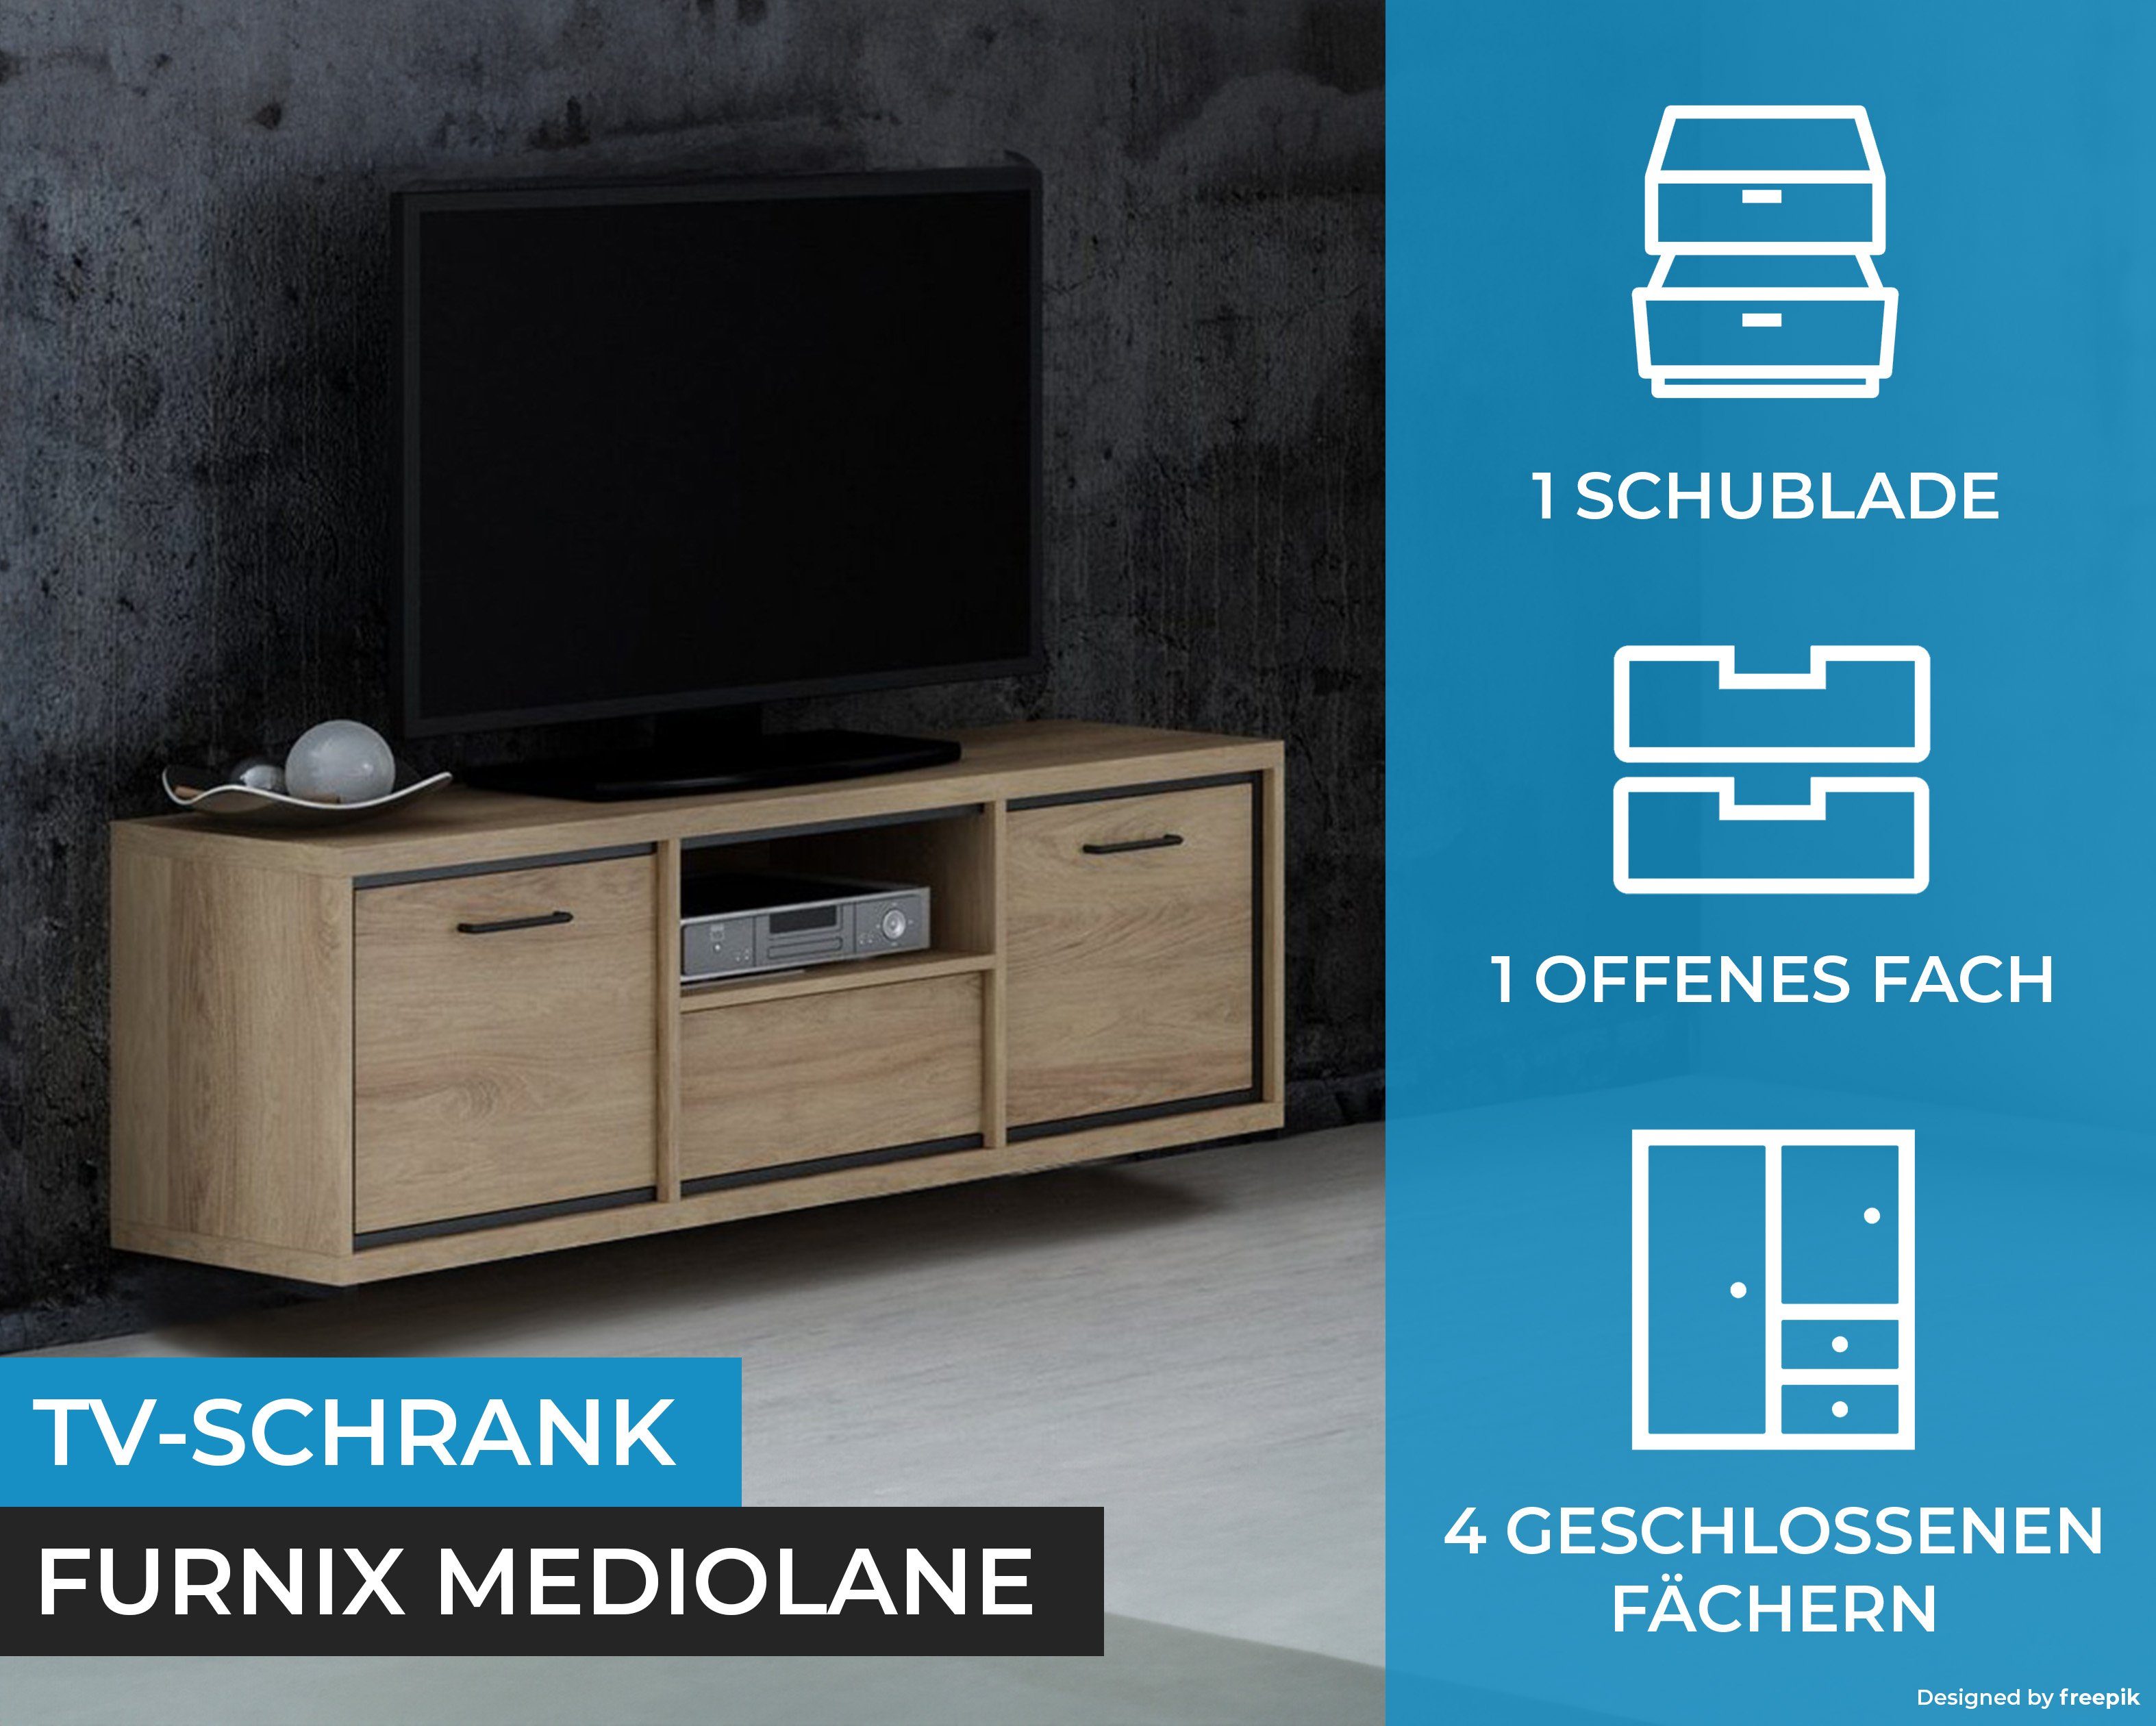 Hängende MEDIOLANE RTV-Schrank TV-Schrank H47,5 Furnix T41 Wotan Lowboard, M-12 TV-Kommode, x x cm B139